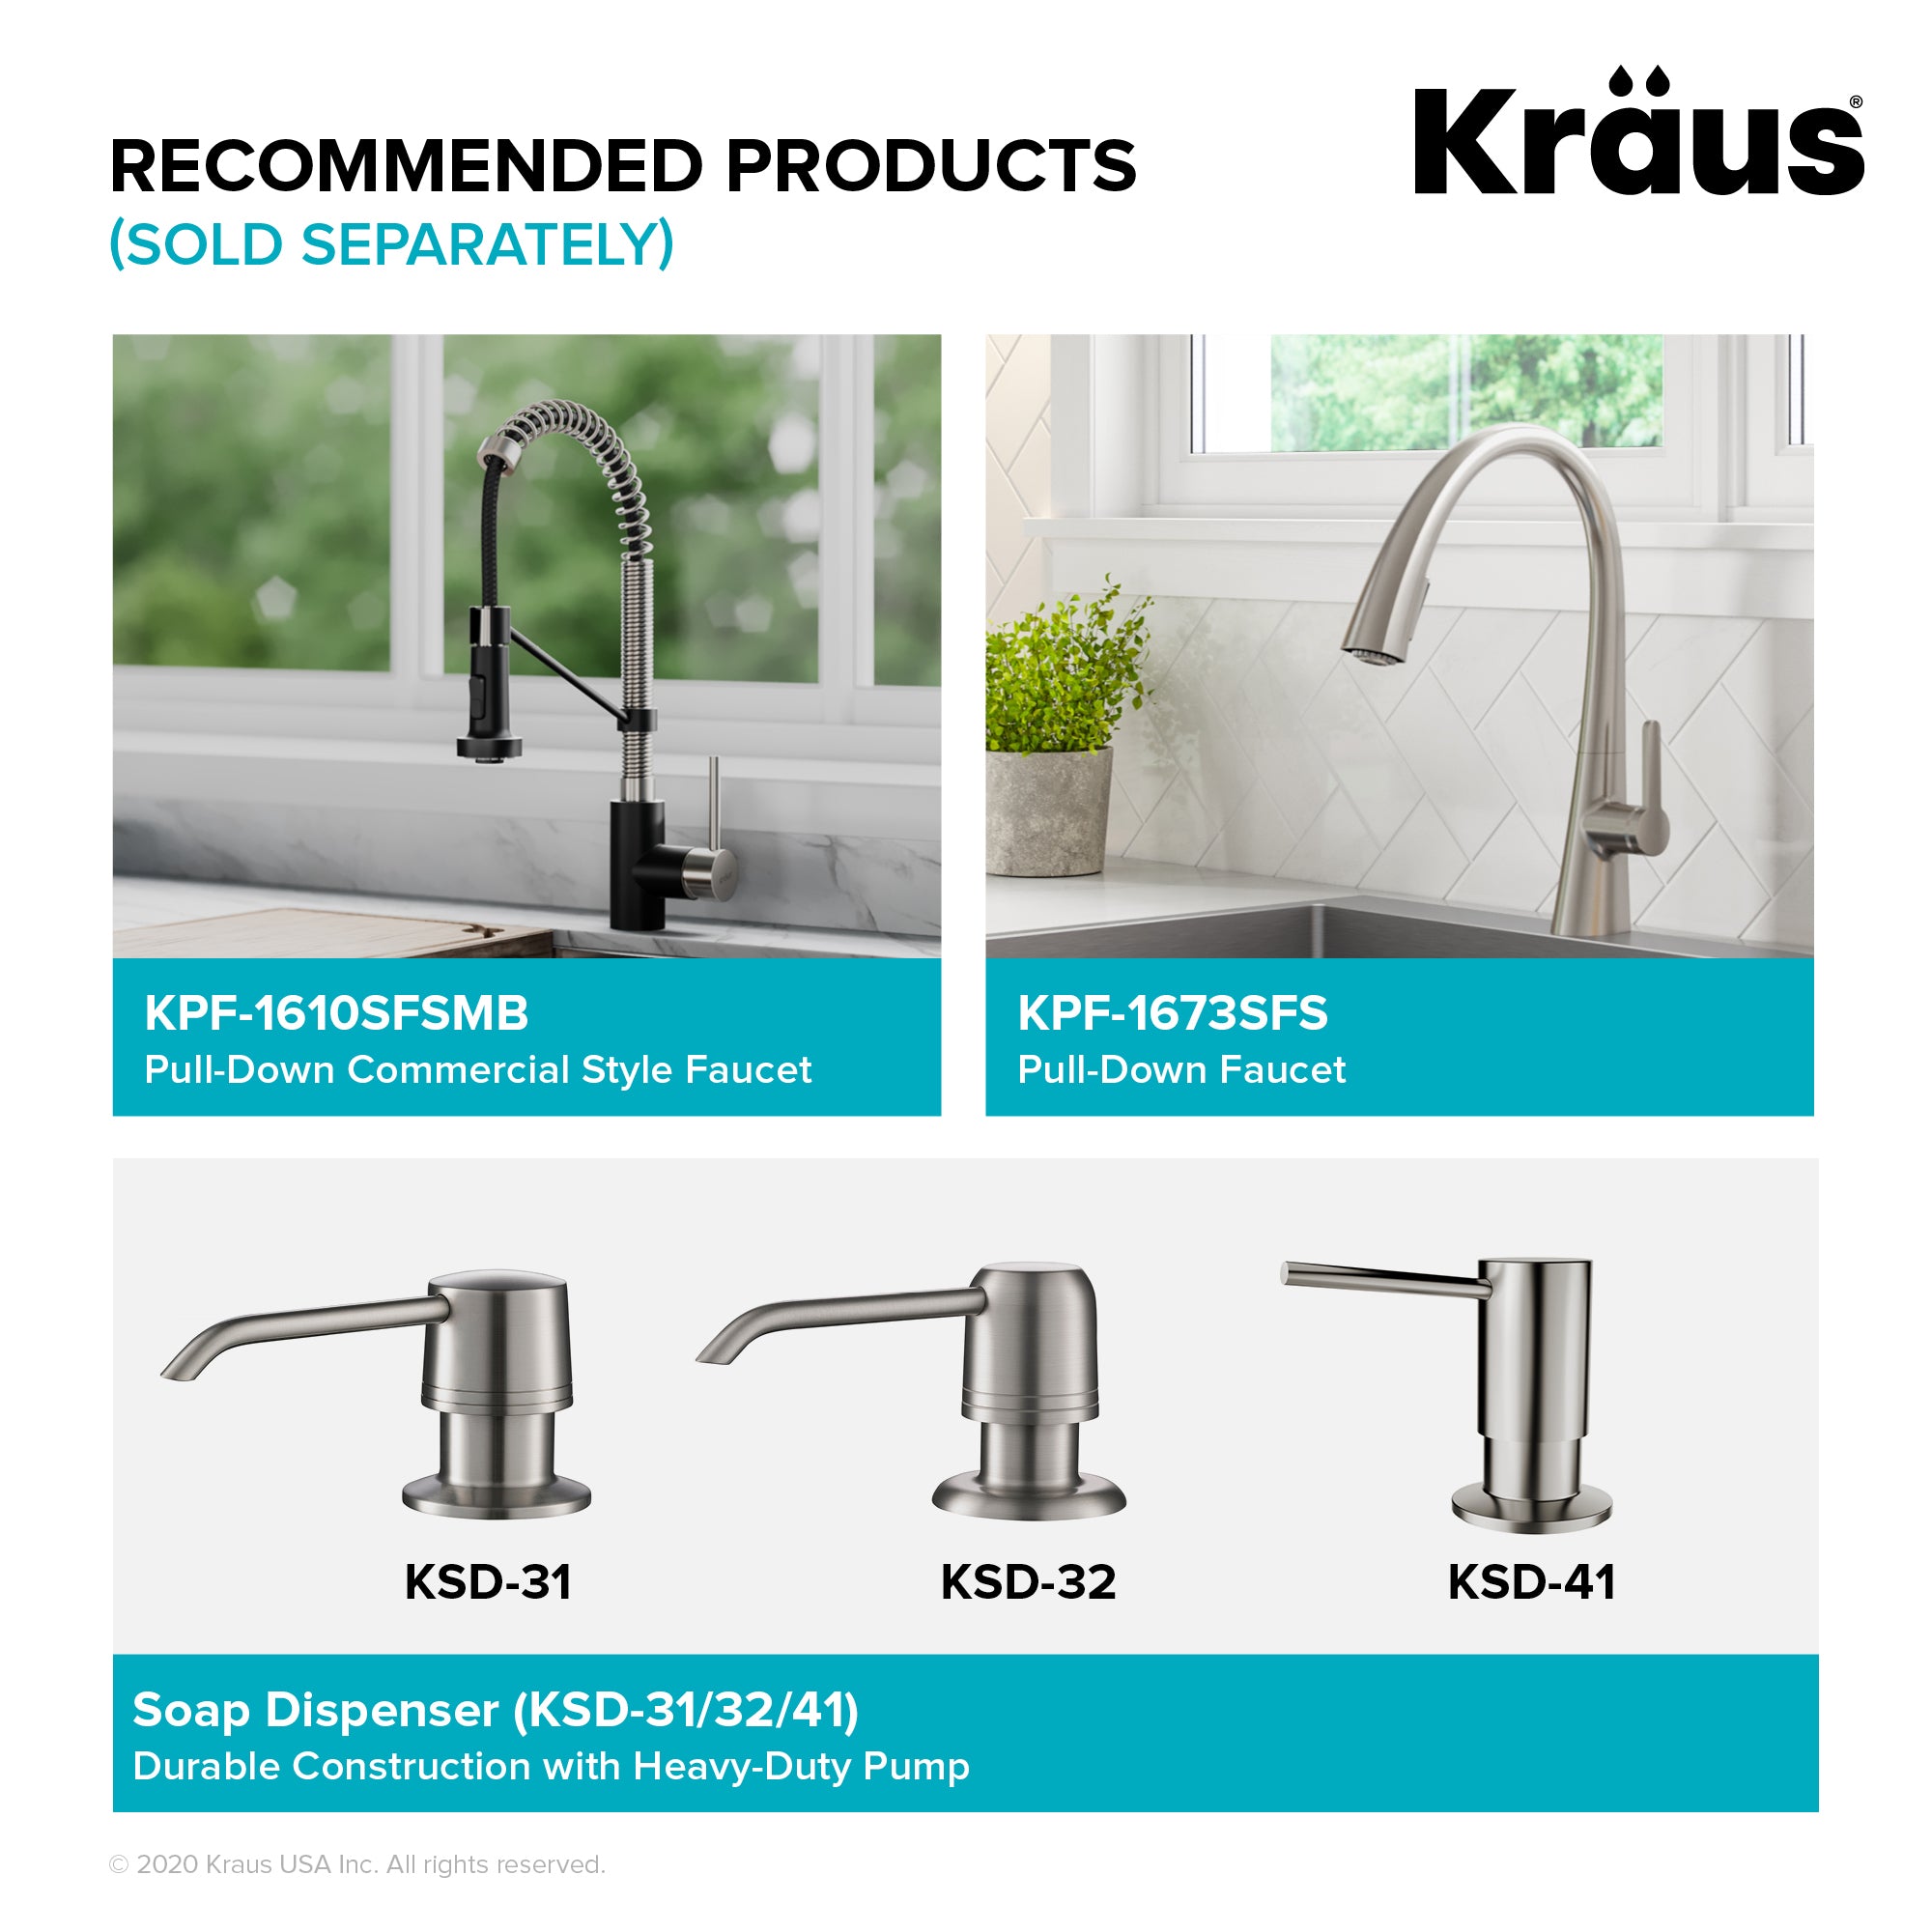 KRAUS Kore Workstation 17" Undermount 16 Gauge Single Bowl Stainless Steel Bar Sink with Accessories-Kitchen Sinks-DirectSinks